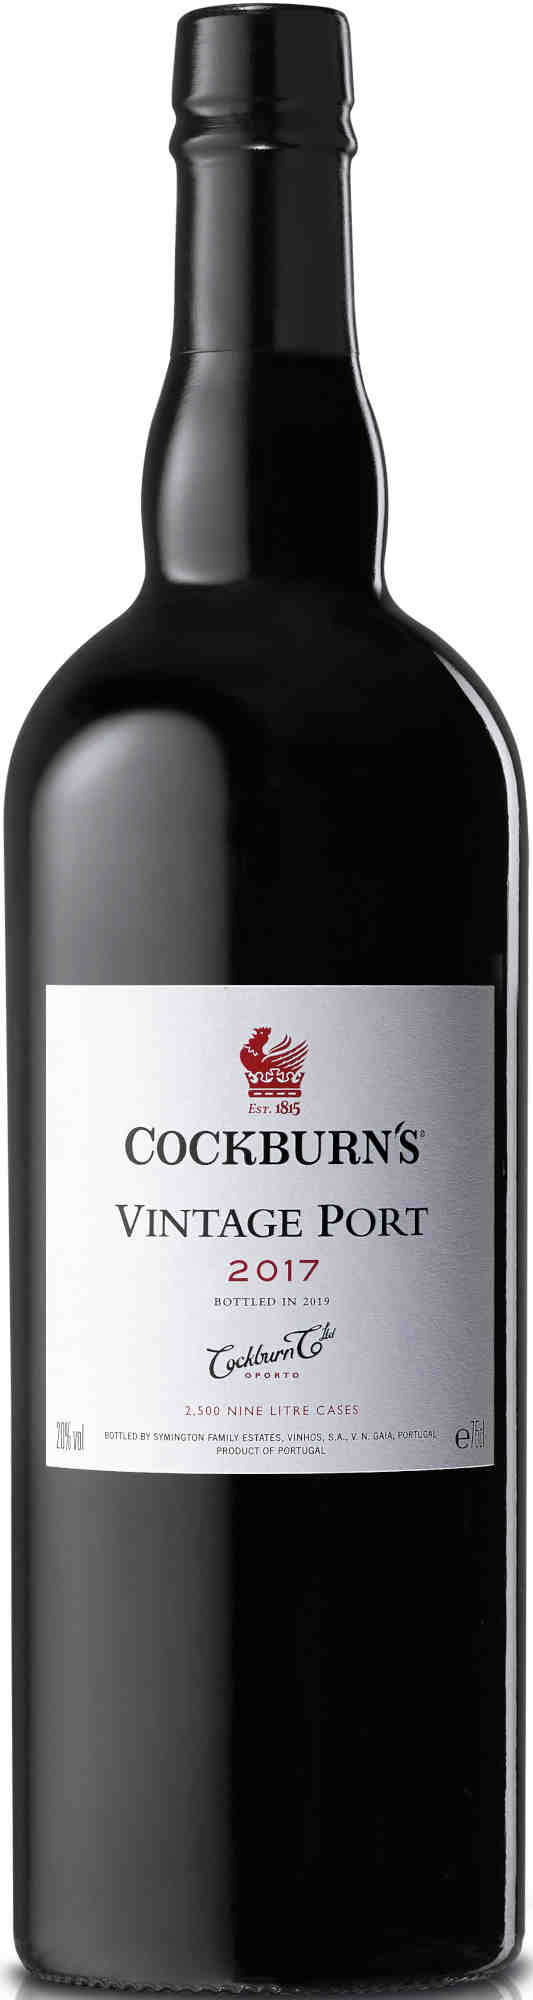 Cockburn-Vintage-Port-2017